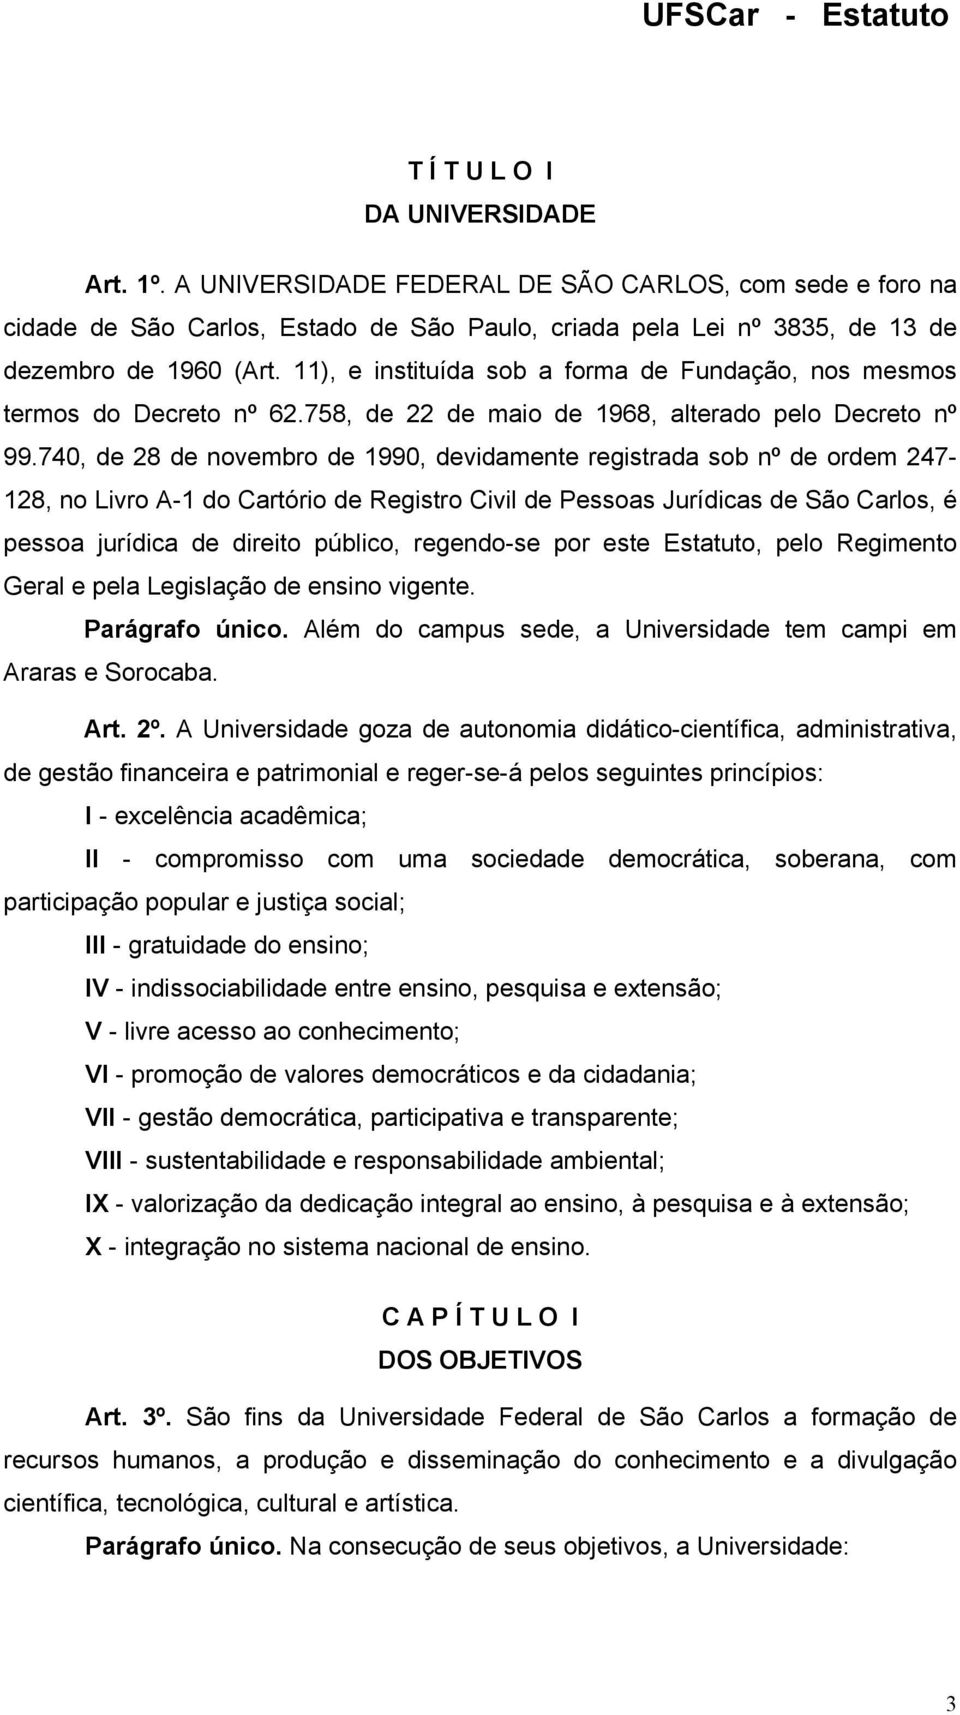 740, de 28 de novembro de 1990, devidamente registrada sob nº de ordem 247-128, no Livro A-1 do Cartório de Registro Civil de Pessoas Jurídicas de São Carlos, é pessoa jurídica de direito público,